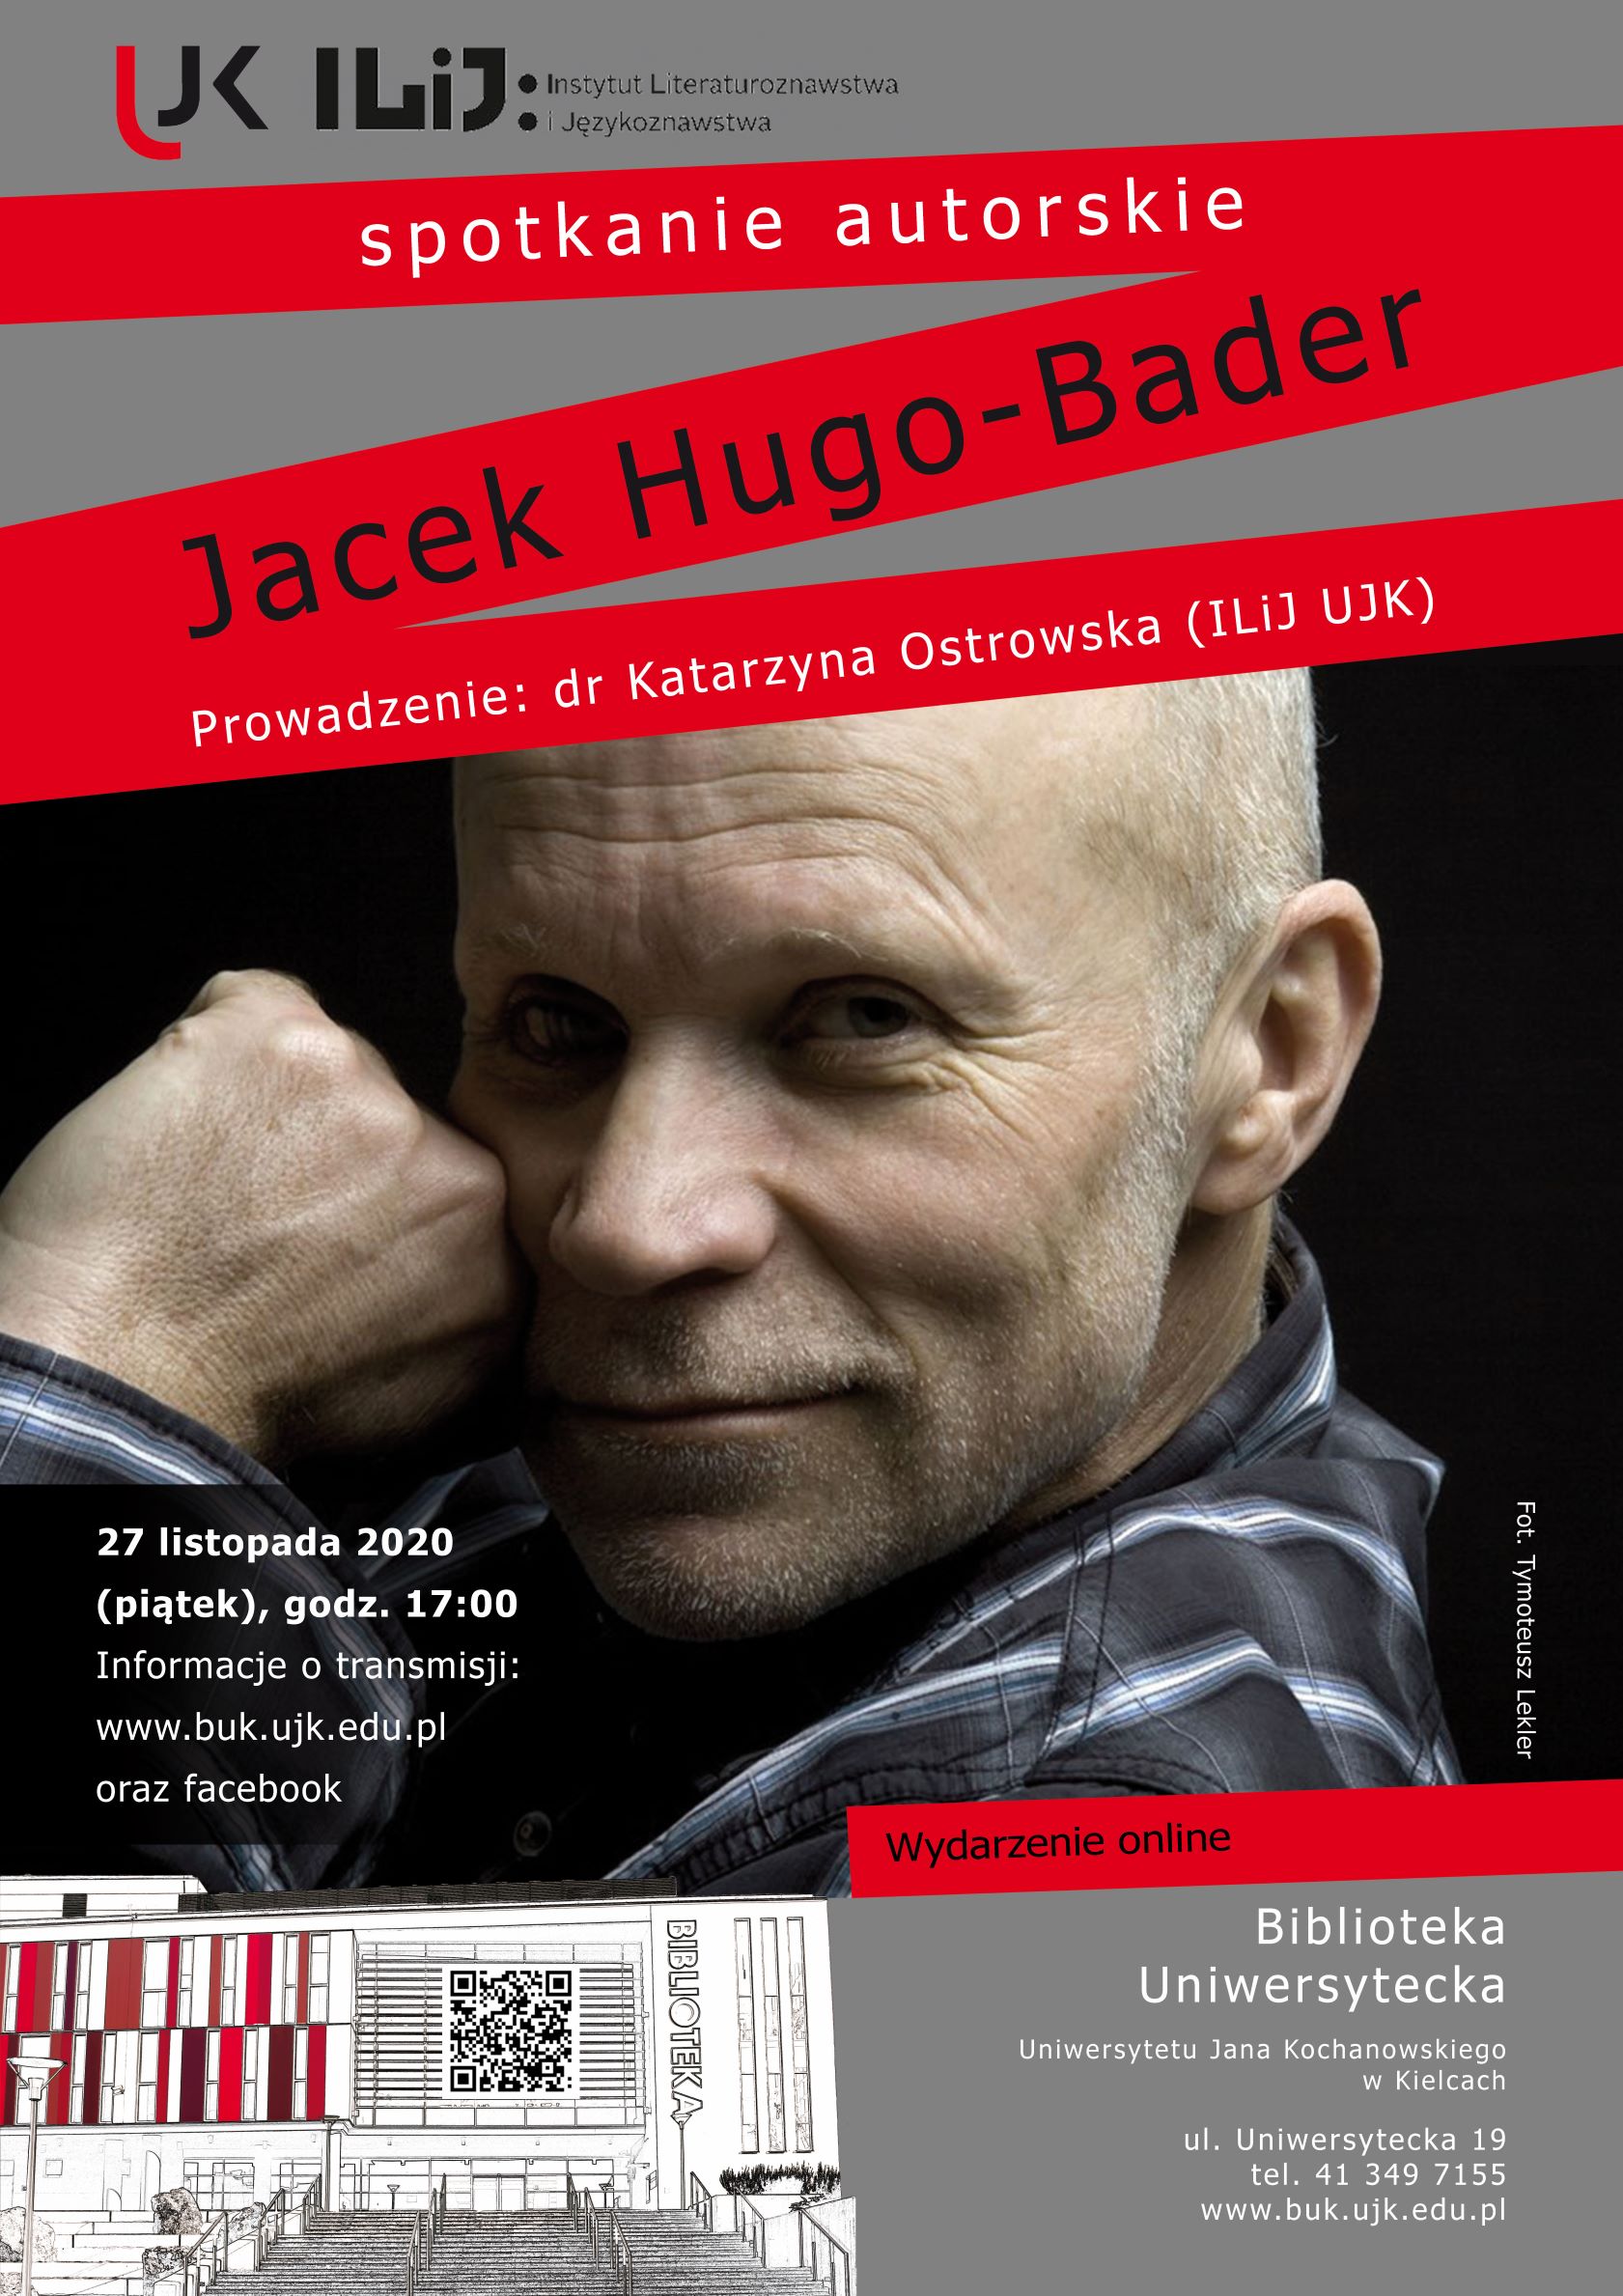 Plakat informujący o spotkaniu online z Jackiem Hugo-Baderem